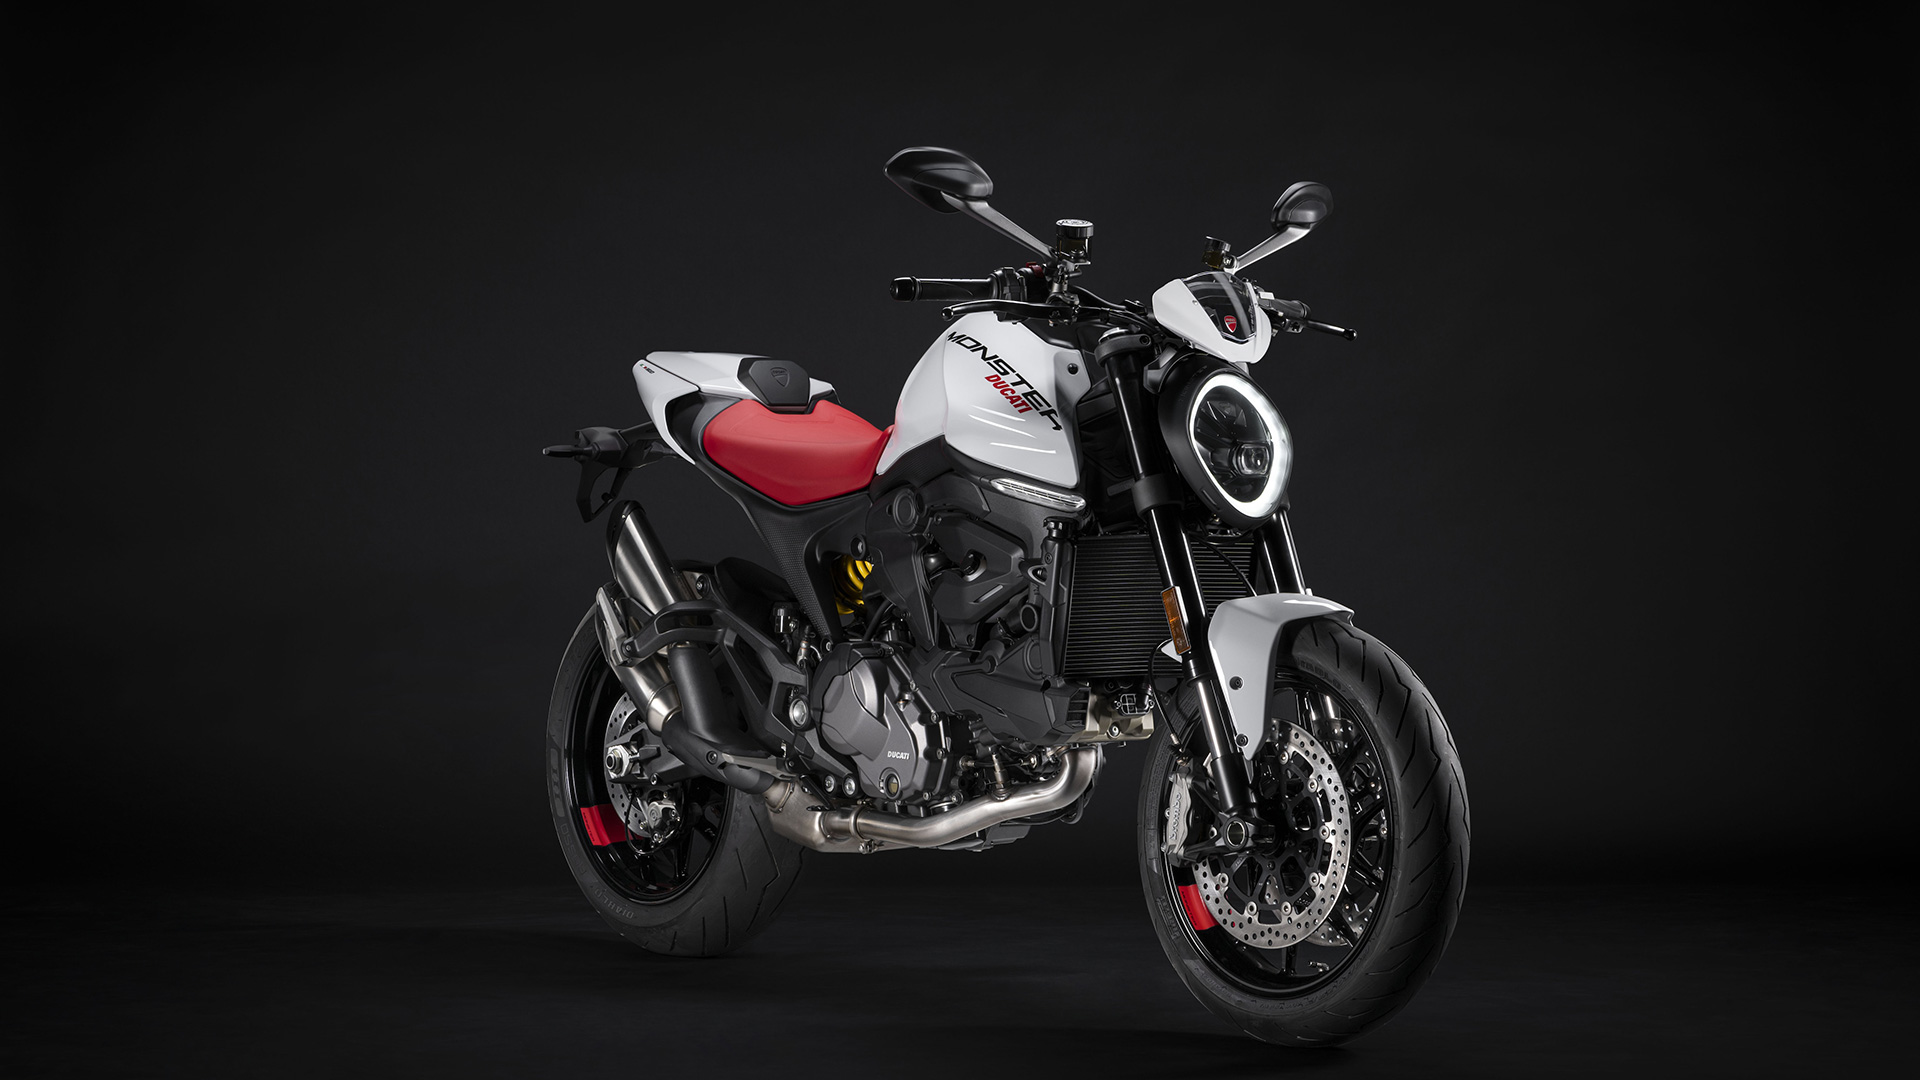 La Ducati Monster luce nueva decoración: el nuevo color blanco llegará en junio